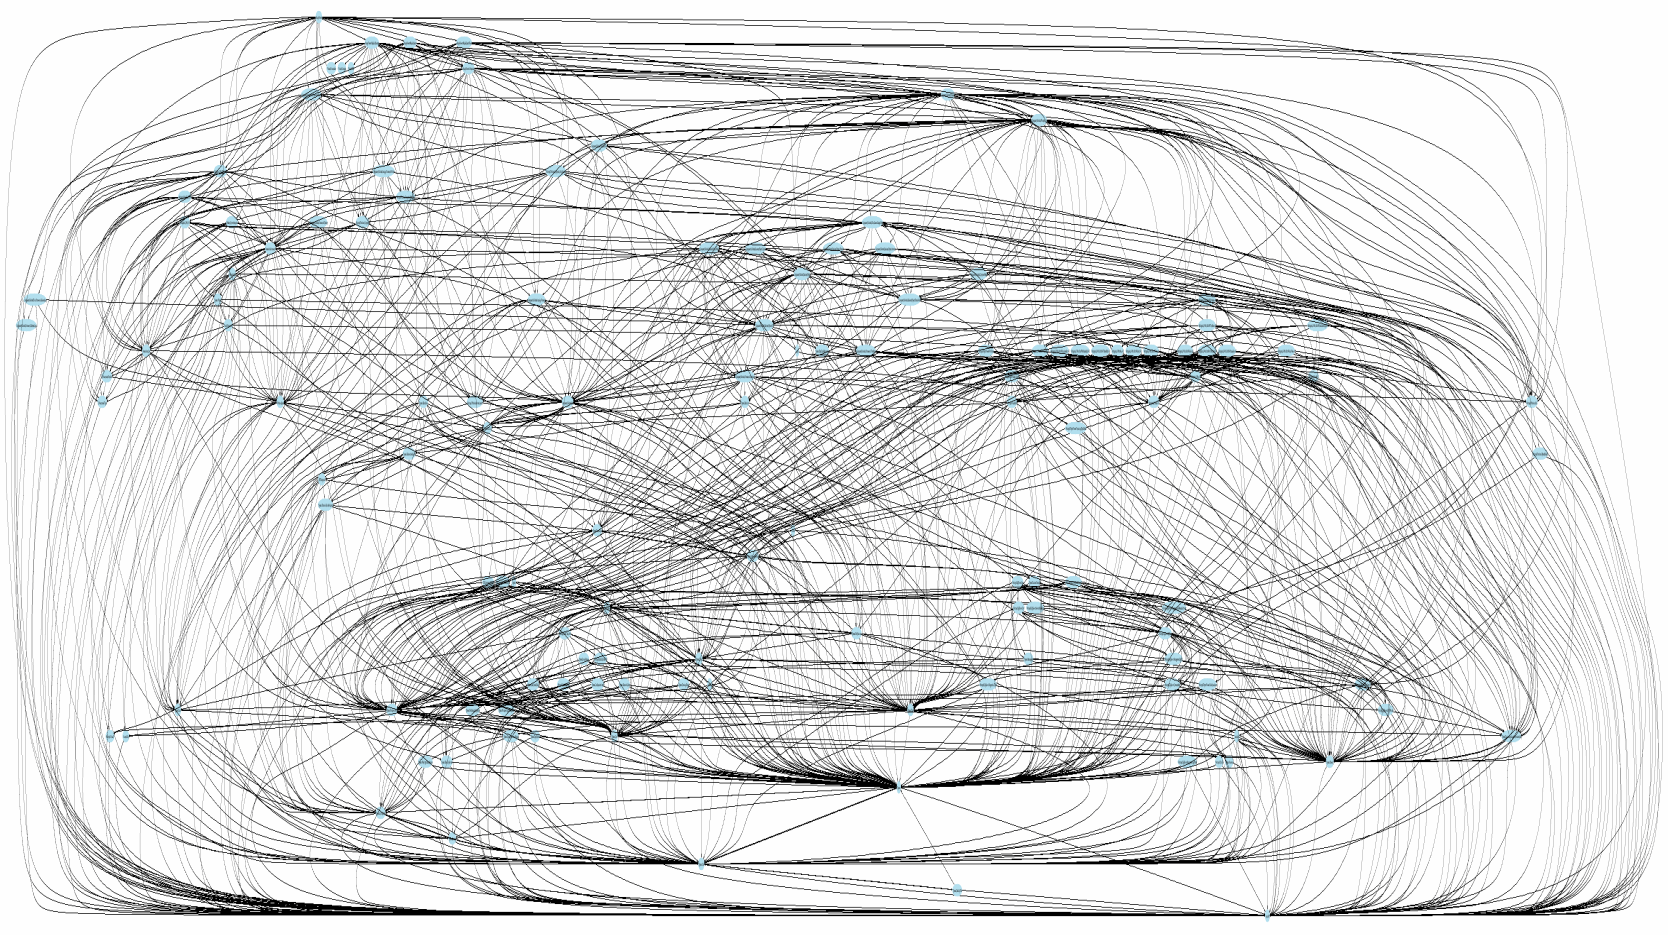 Messy graph